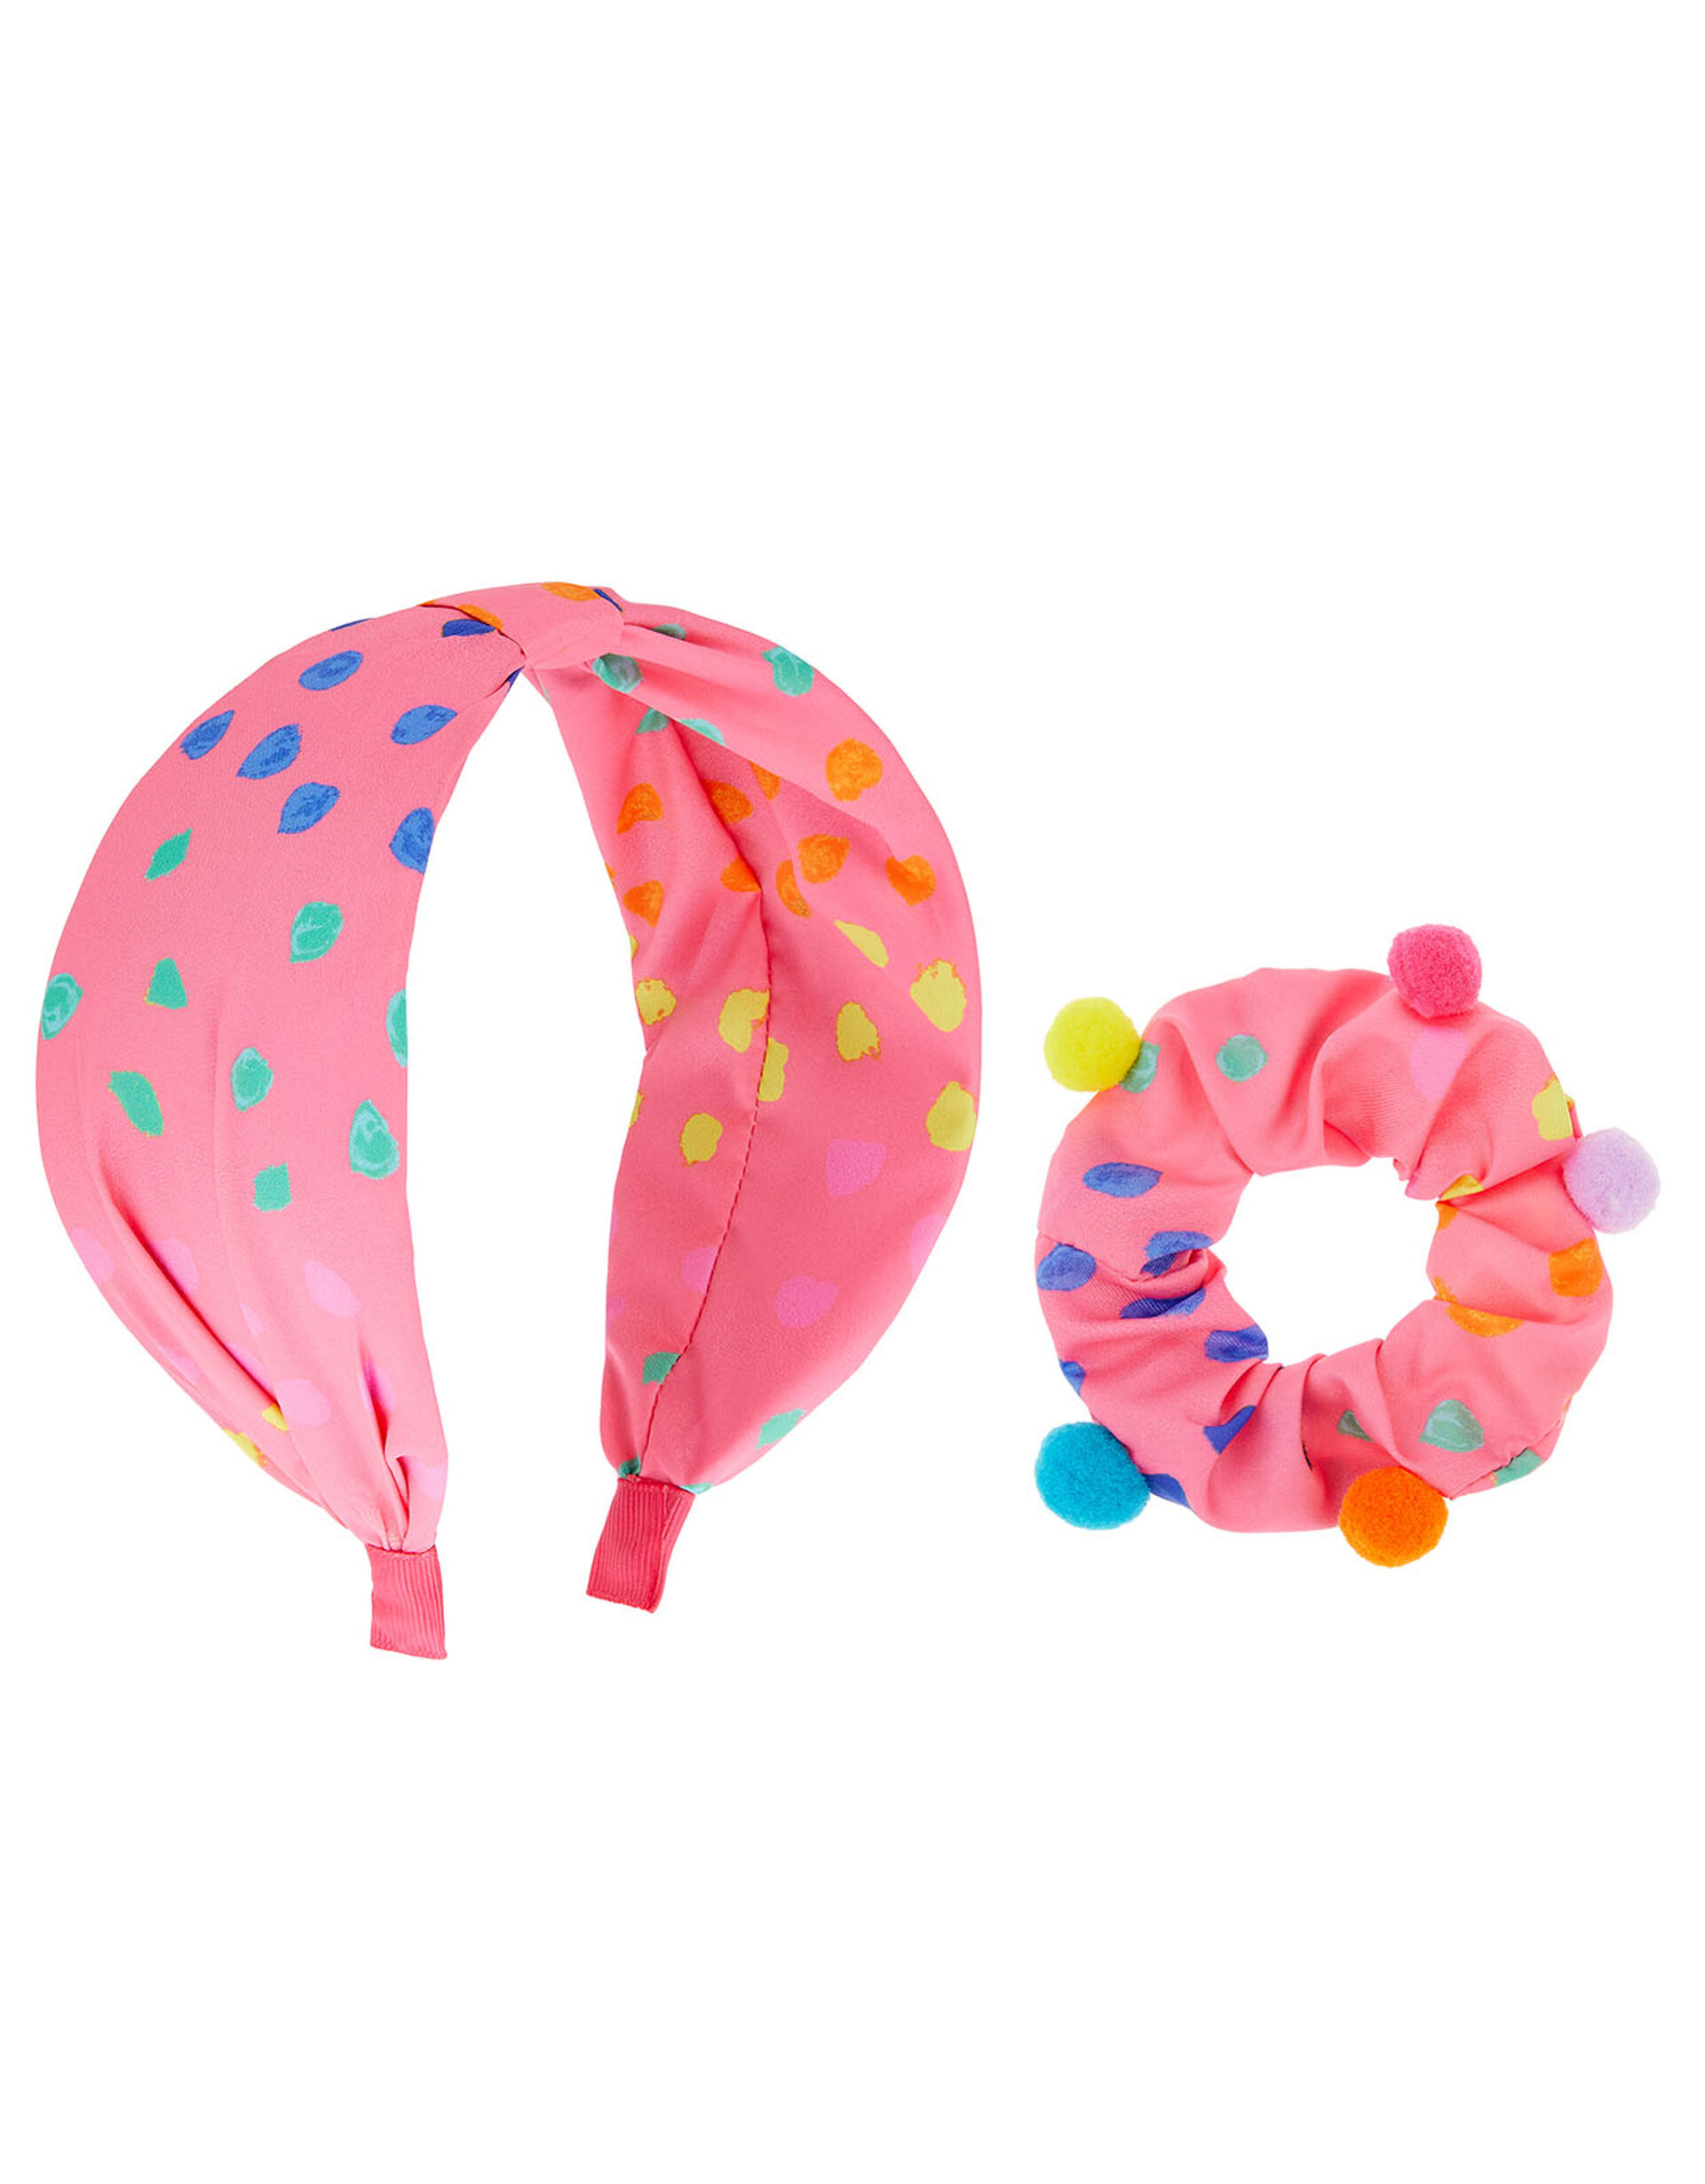 Polka Dot and Pom-Pom Hair Set, , large